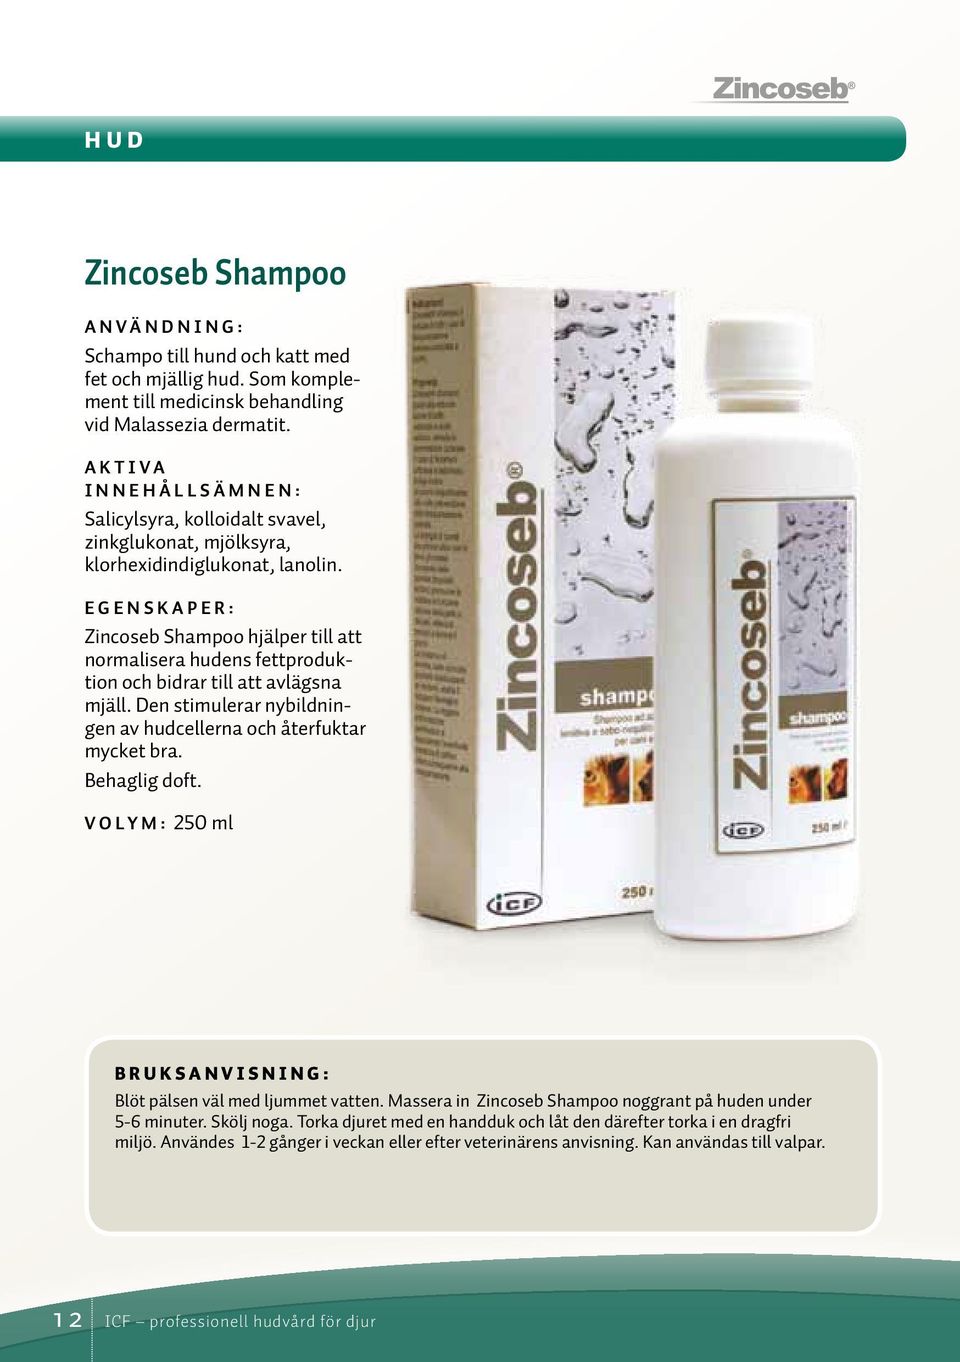 Zincoseb Shampoo hjälper till att normalisera hudens fettproduktion och bidrar till att avlägsna mjäll. Den stimulerar nybildningen av hudcellerna och återfuktar mycket bra. Behaglig doft.